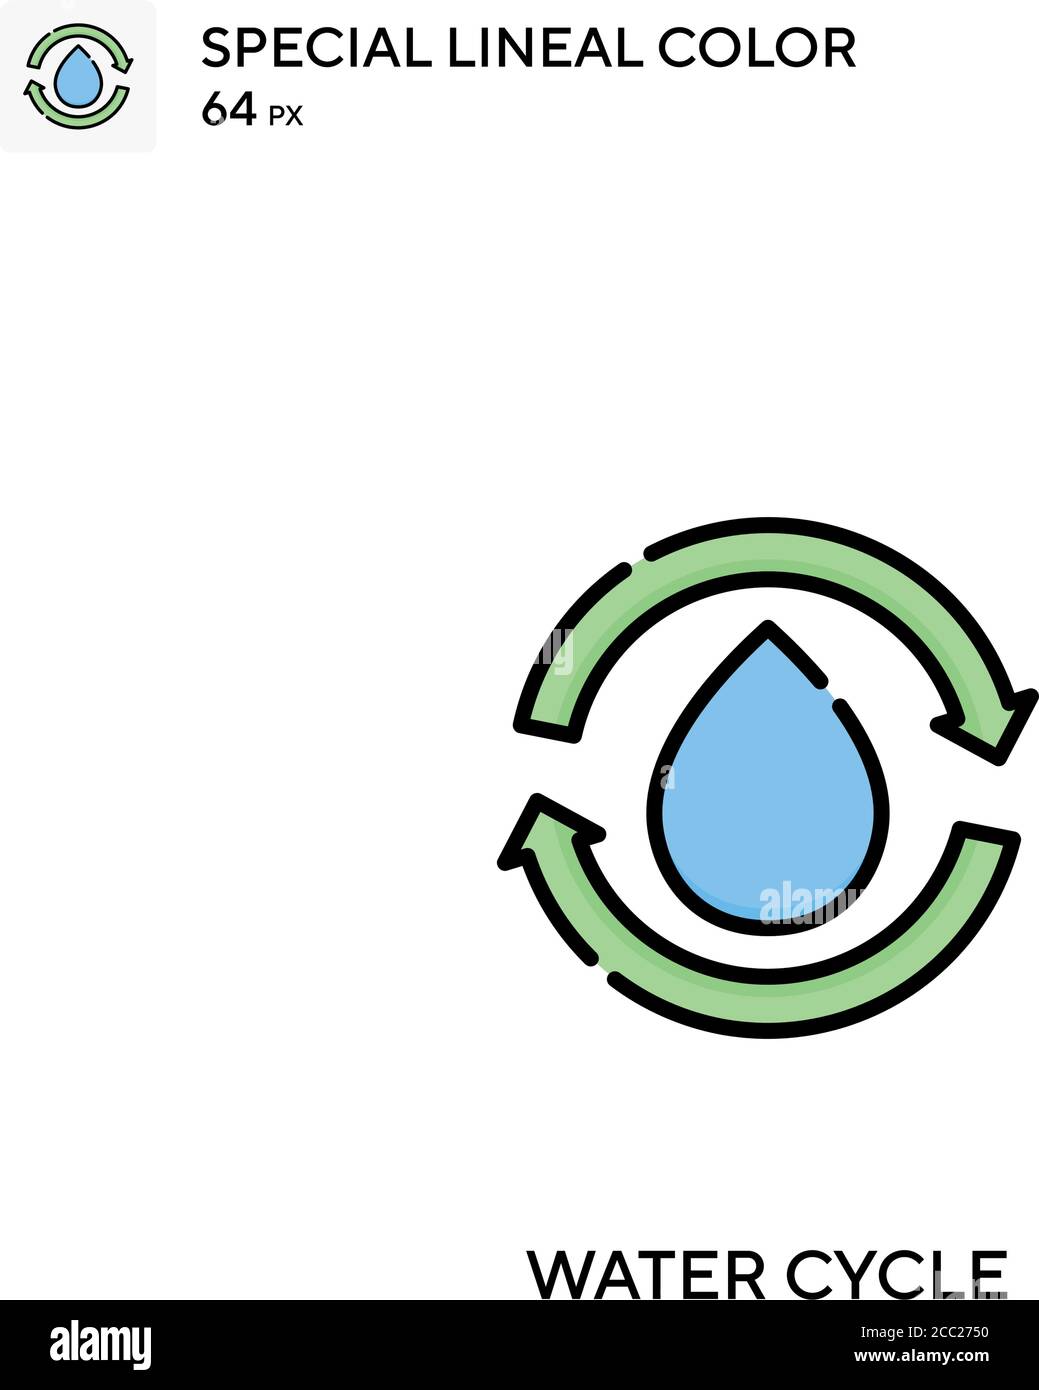 Wasserkreislauf spezielles lineales Farbvektorsymbol. Wasserkreislauf-Symbole für Ihr Geschäftsprojekt Stock Vektor